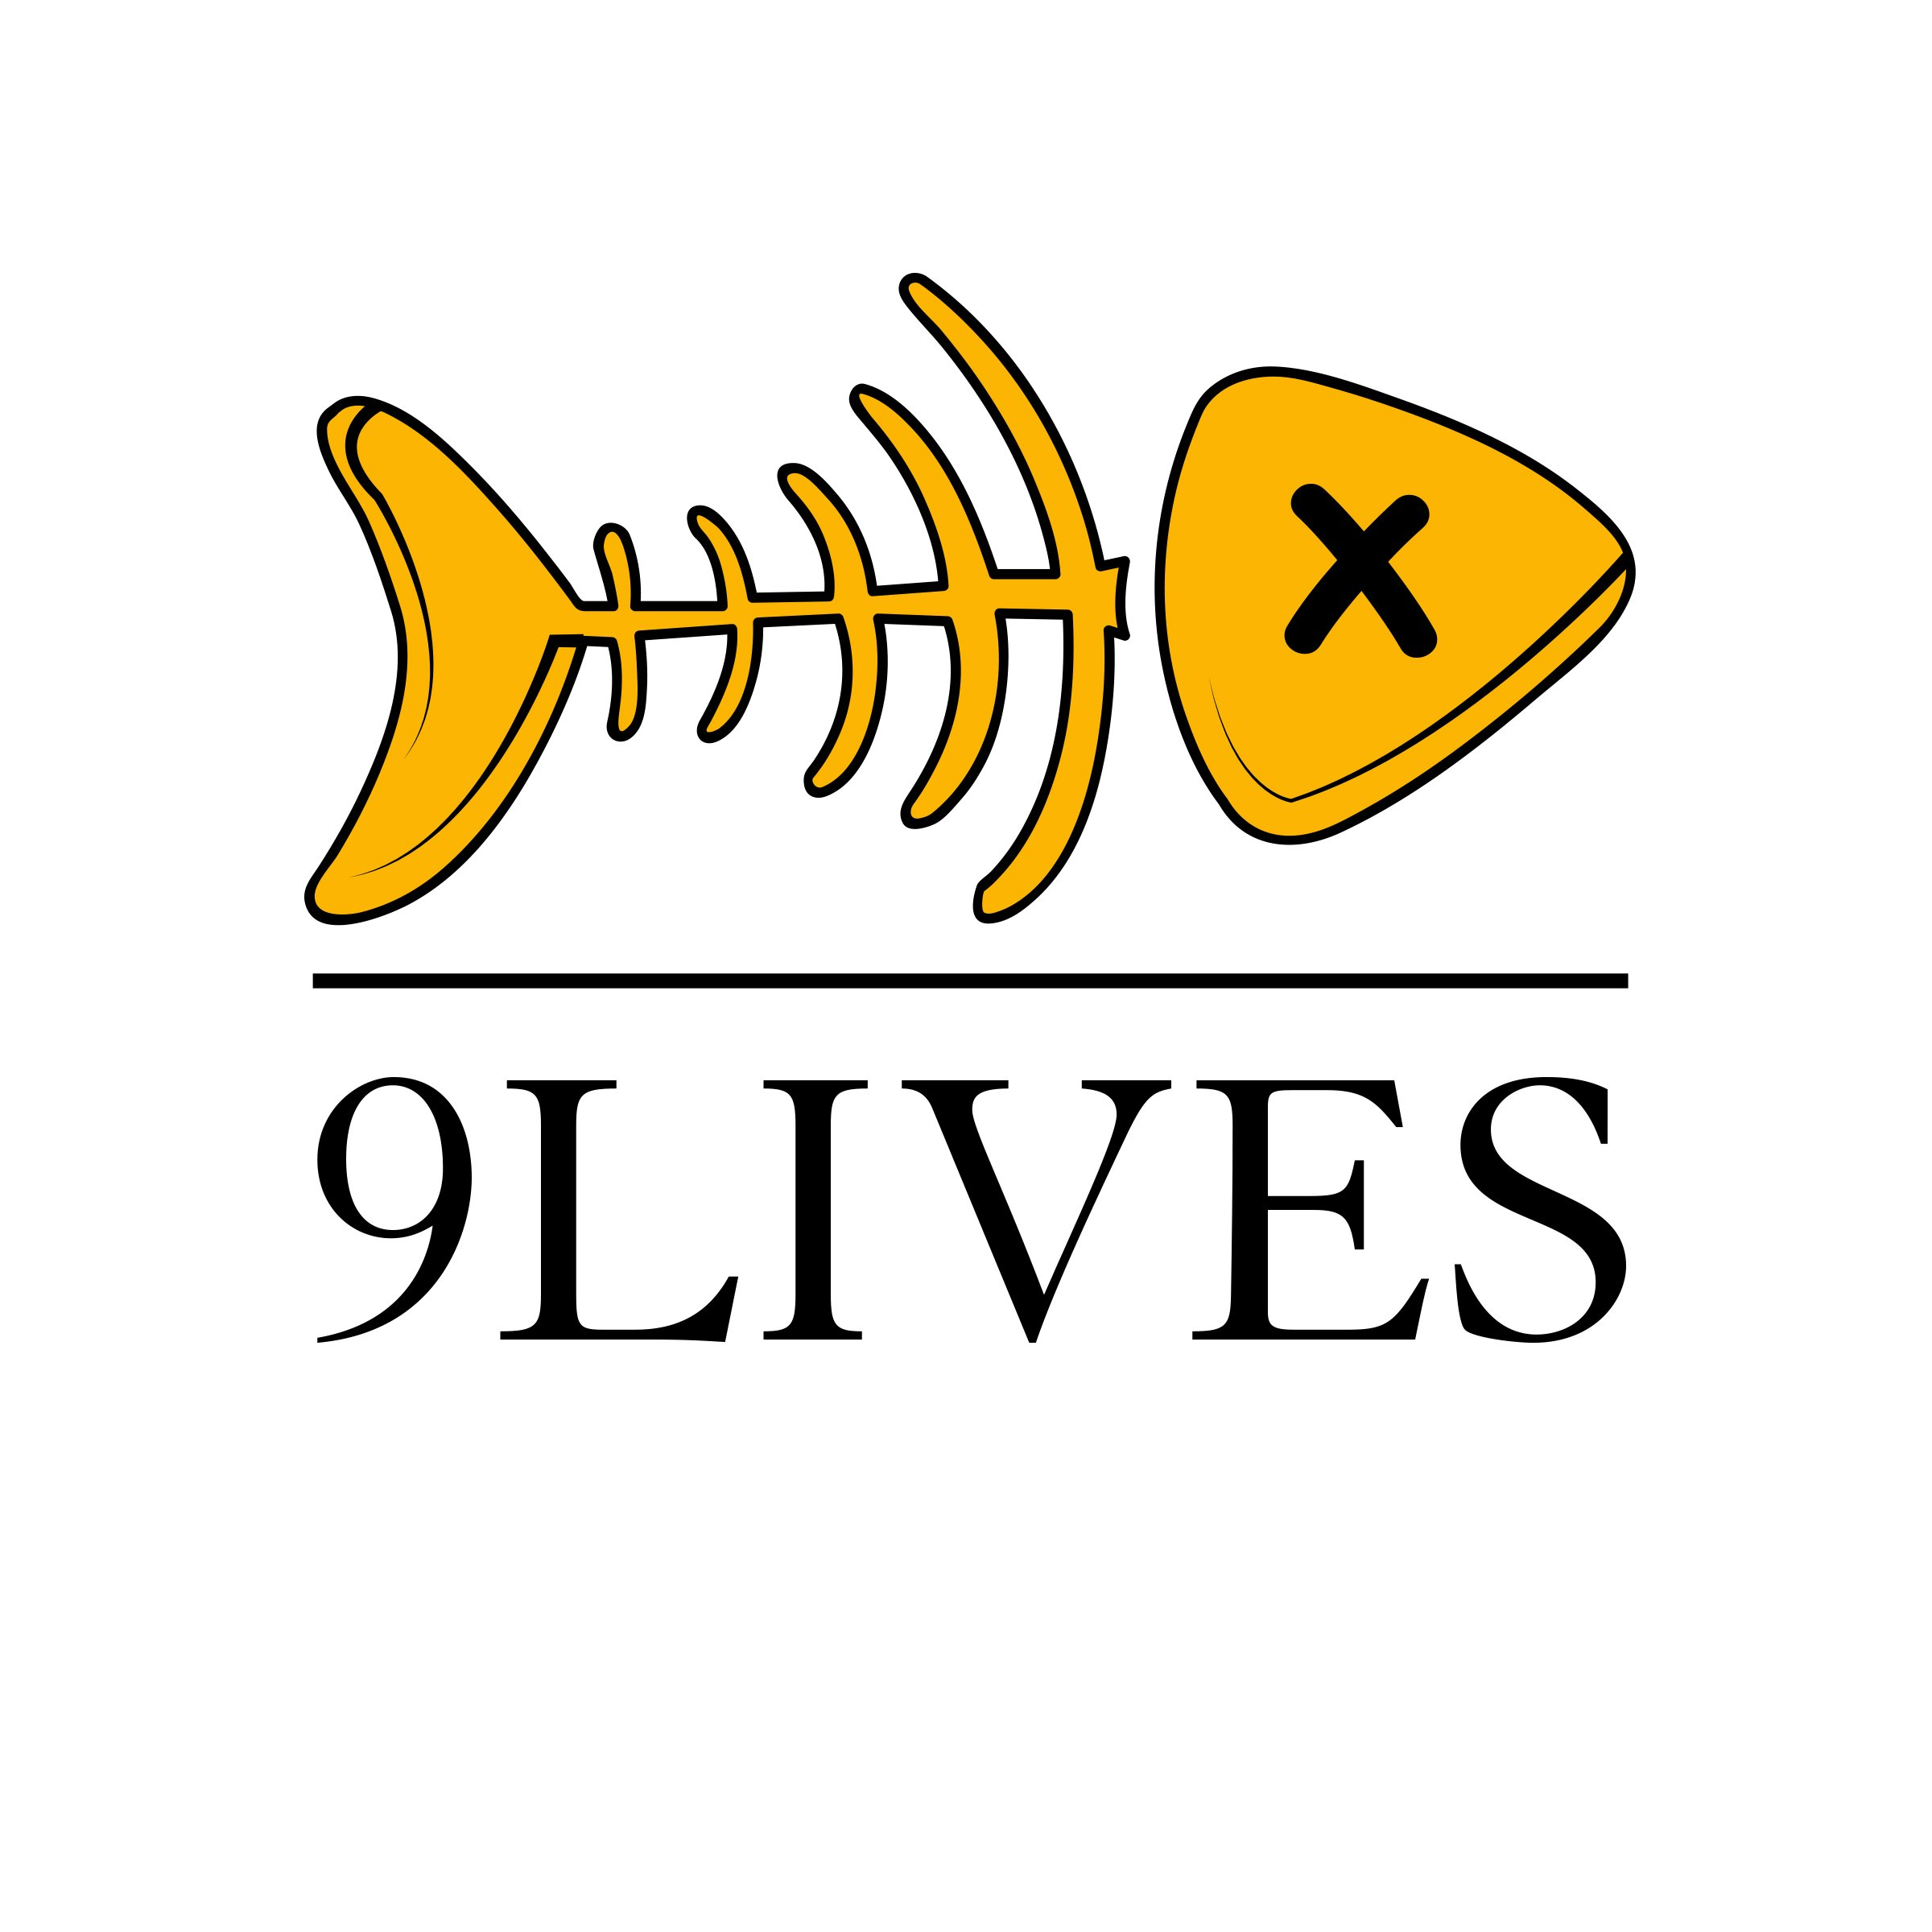 Trademark Logo 9LIVES